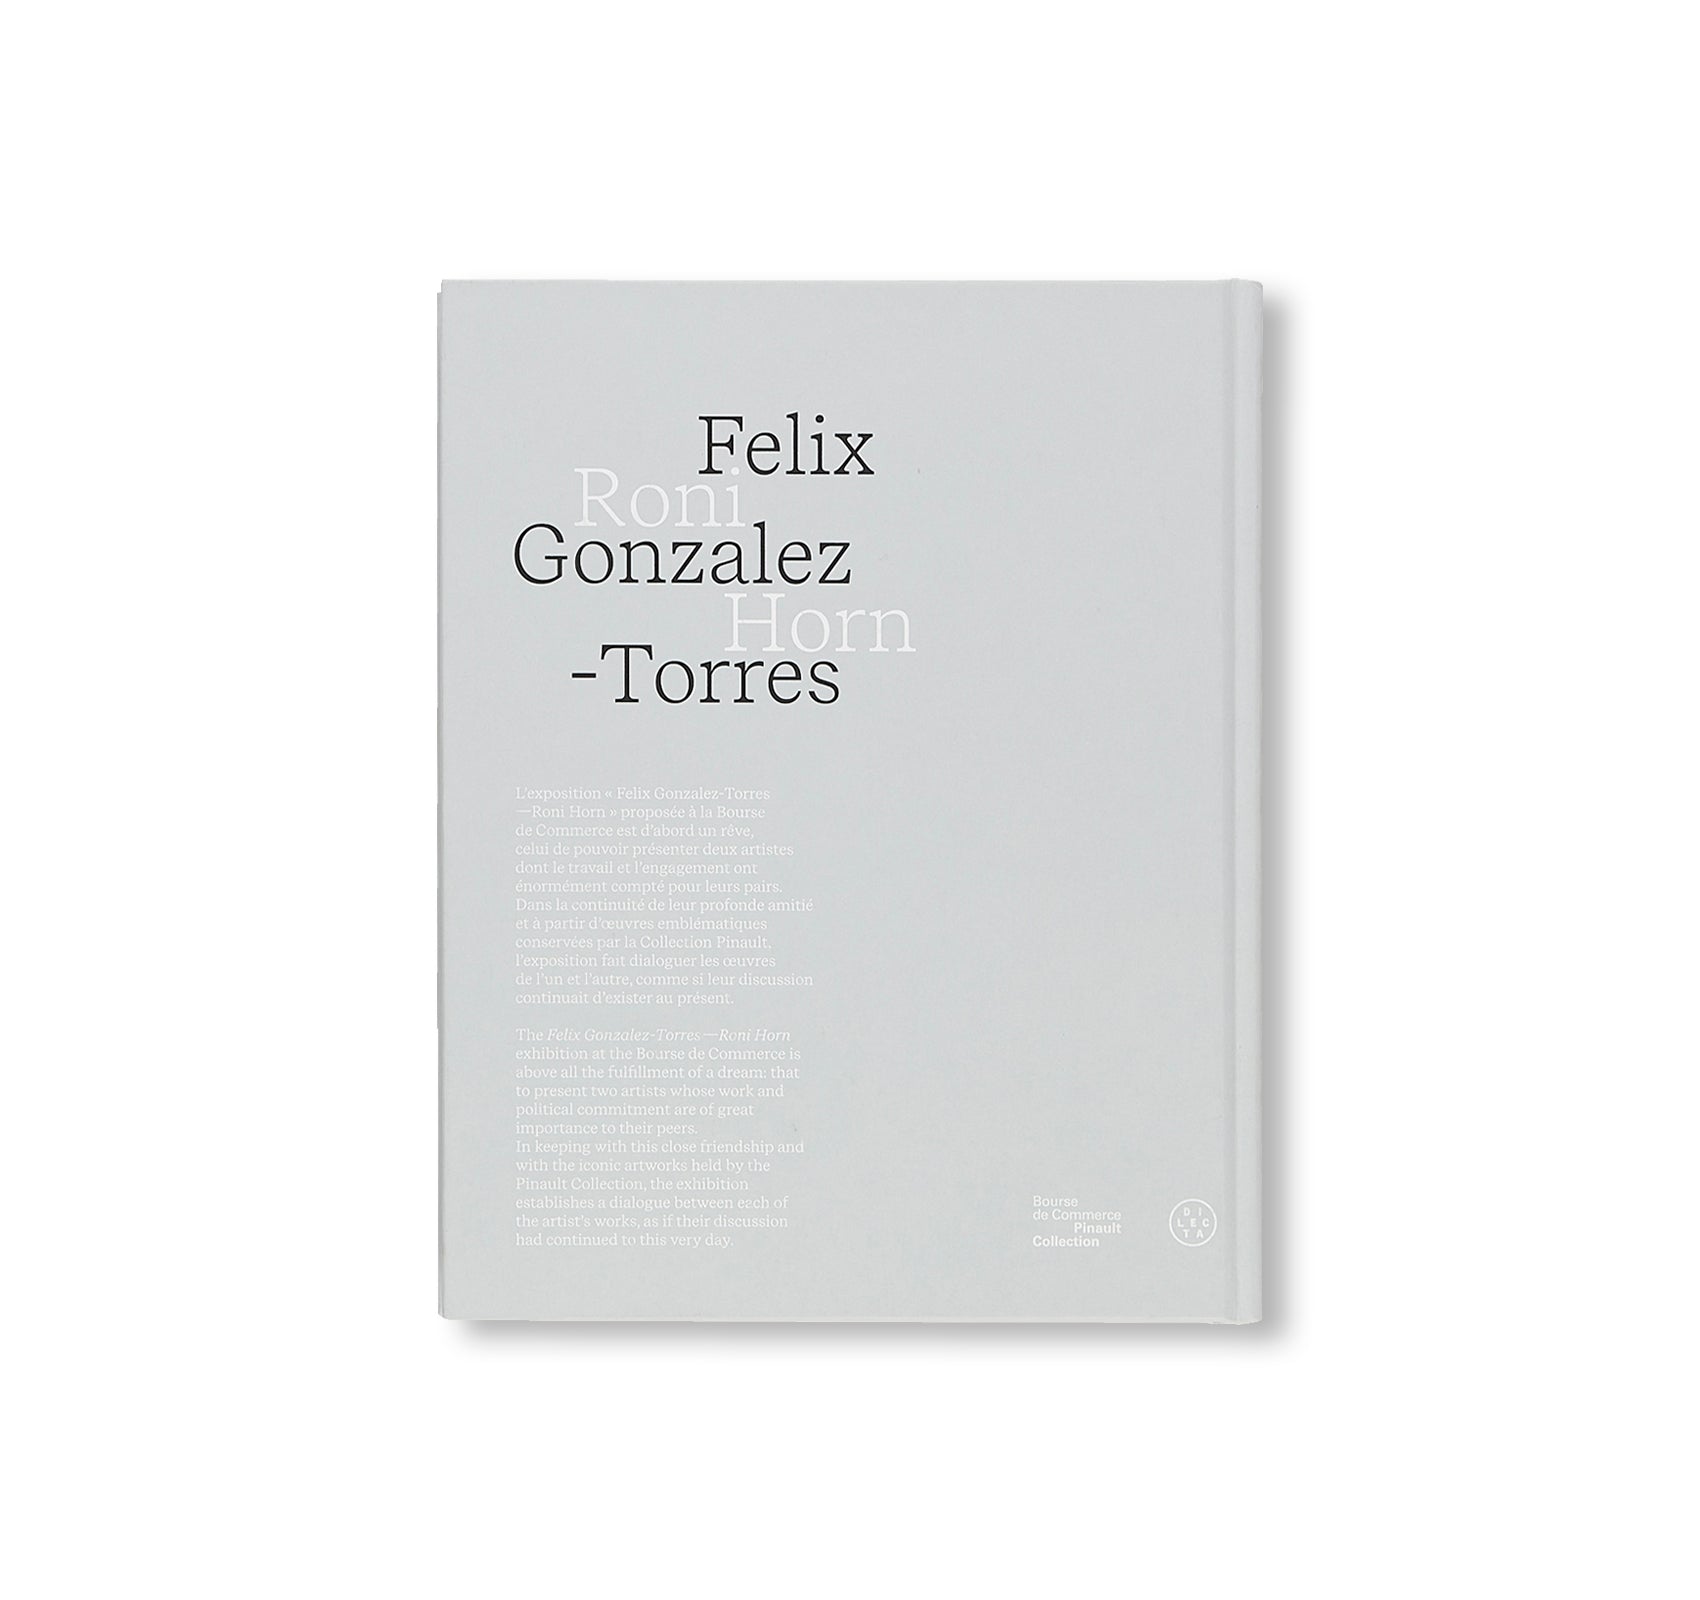 FELIX GONZALEZ-TORRES — RONI HORN by Felix Gonzalez-Torres, Roni Horn